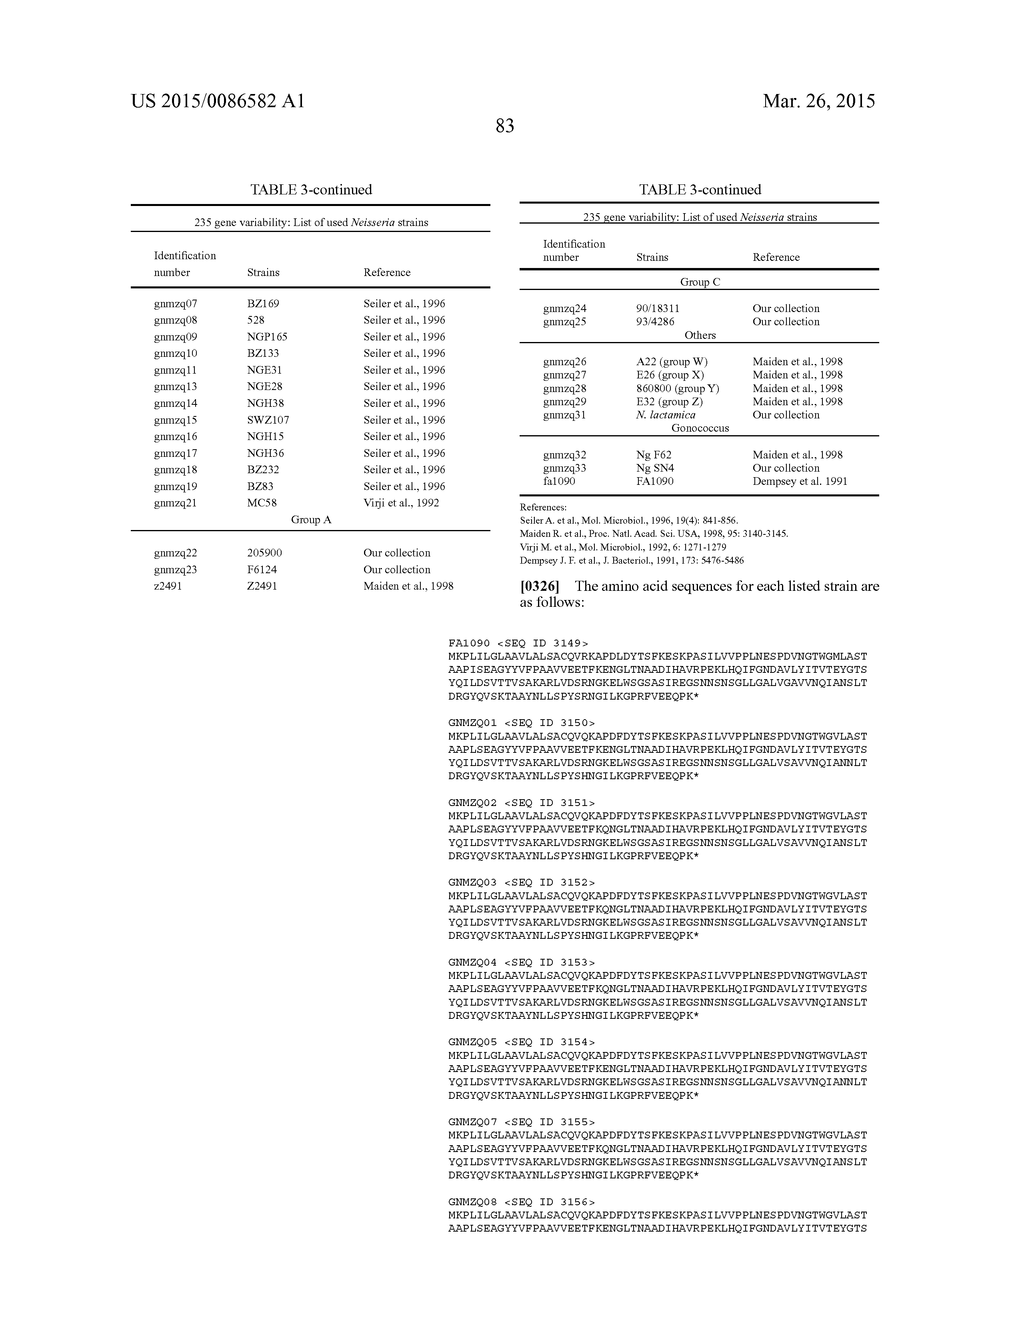 NEISSERIA MENINGITIDIS ANTIGENS AND COMPOSITIONS - diagram, schematic, and image 115